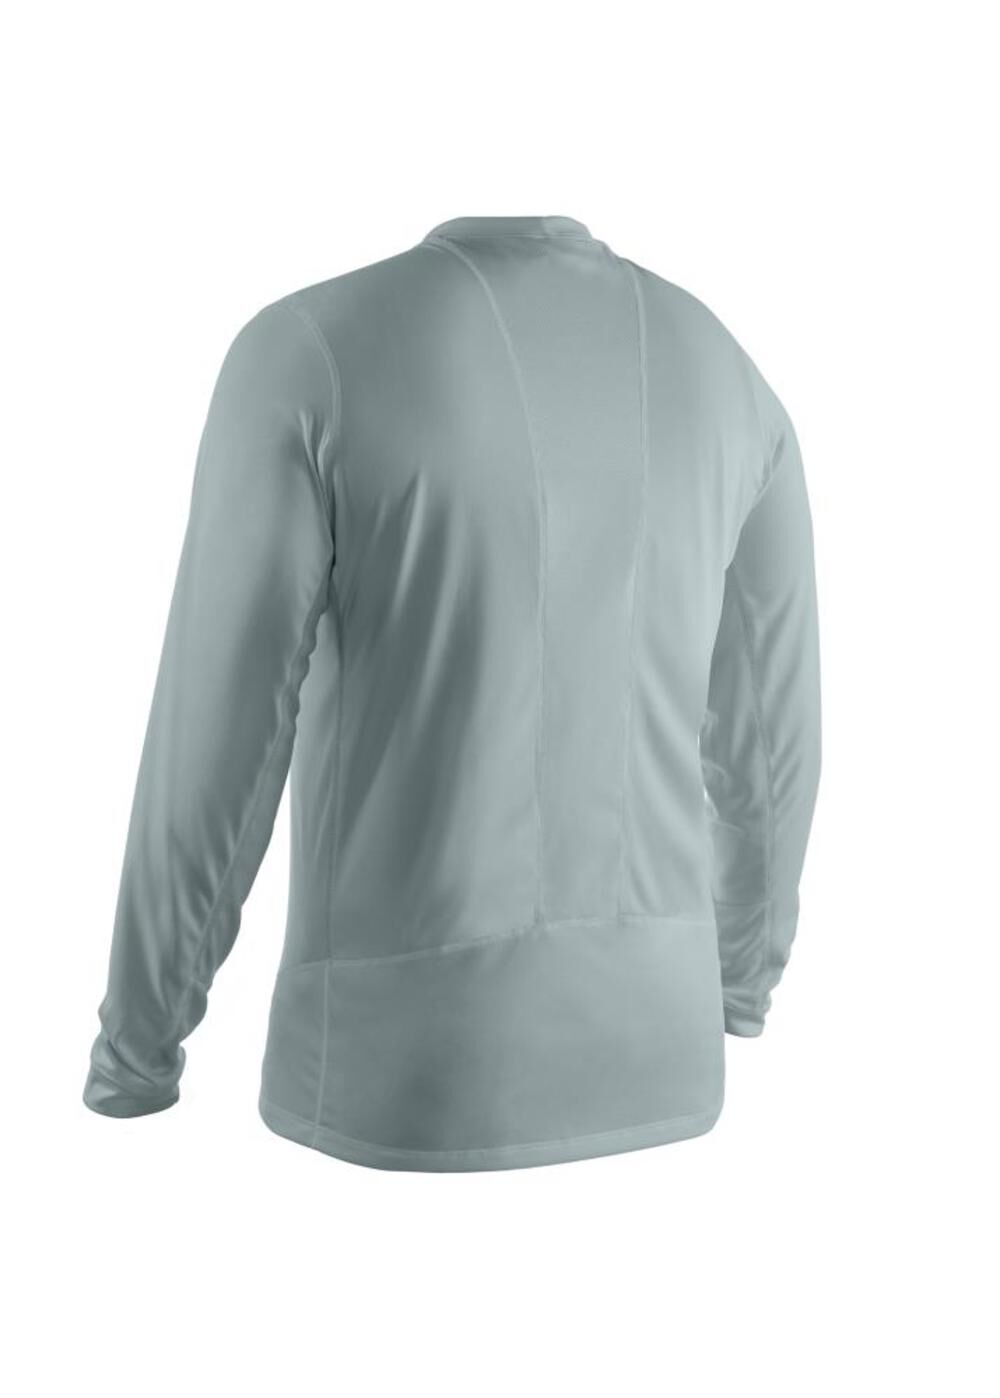 WorkSkin Light Weight Performance Long Sleeve Shirt - Gray - 2XL 411G-2X